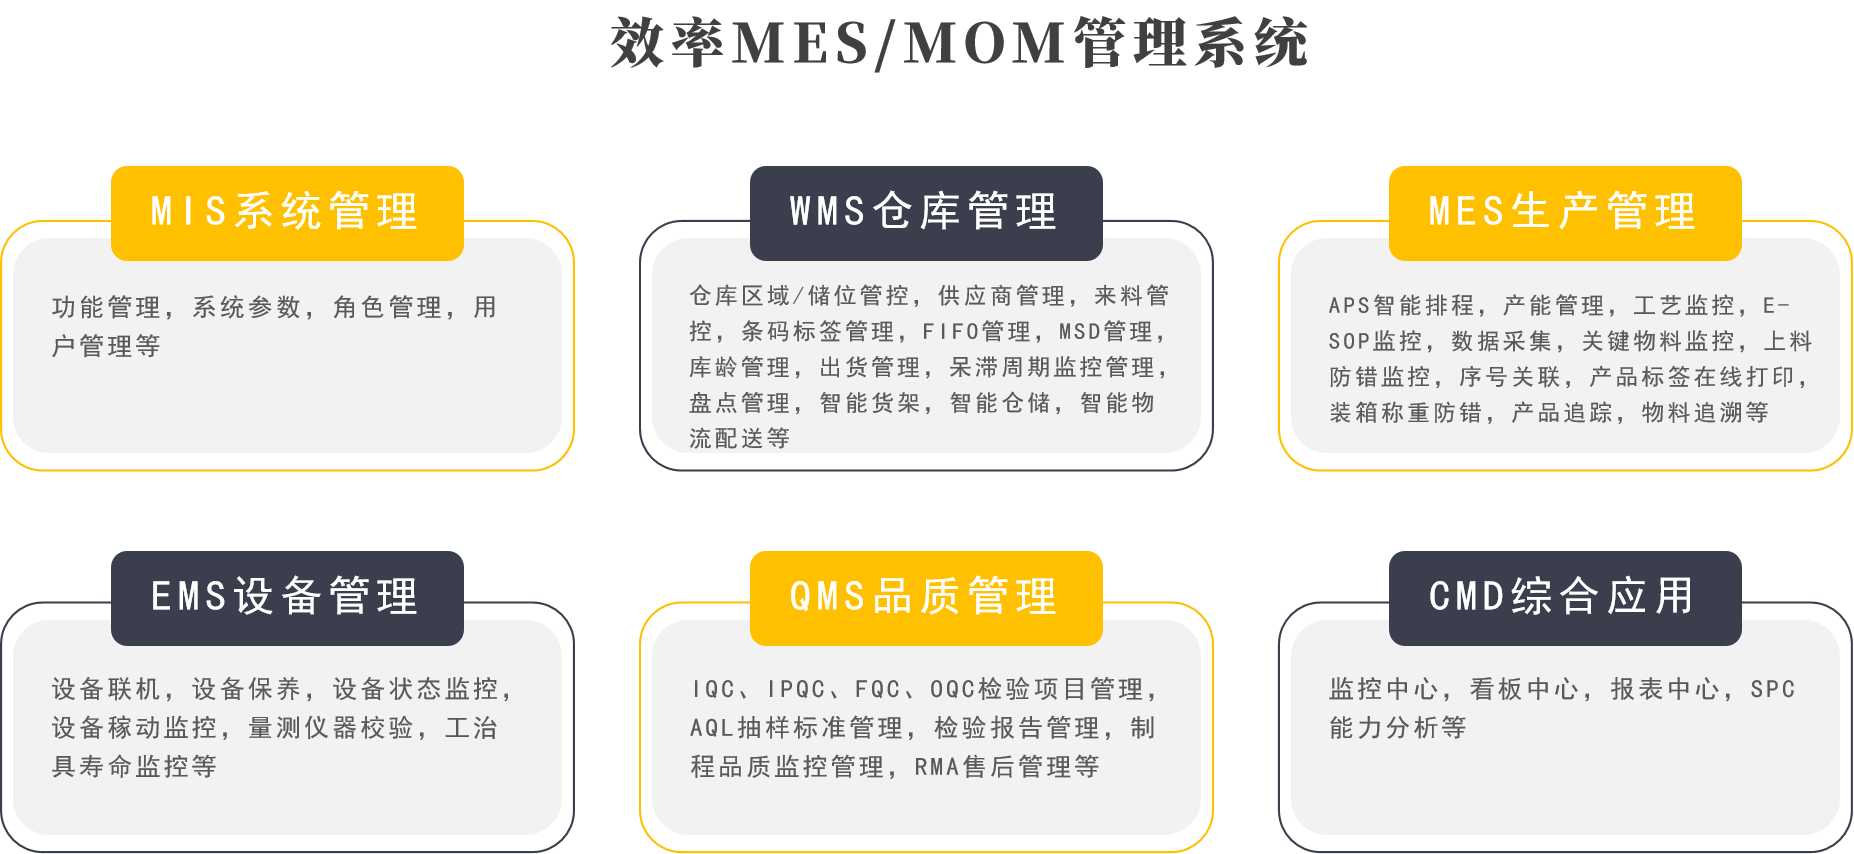 效率MES/MOM系统功能